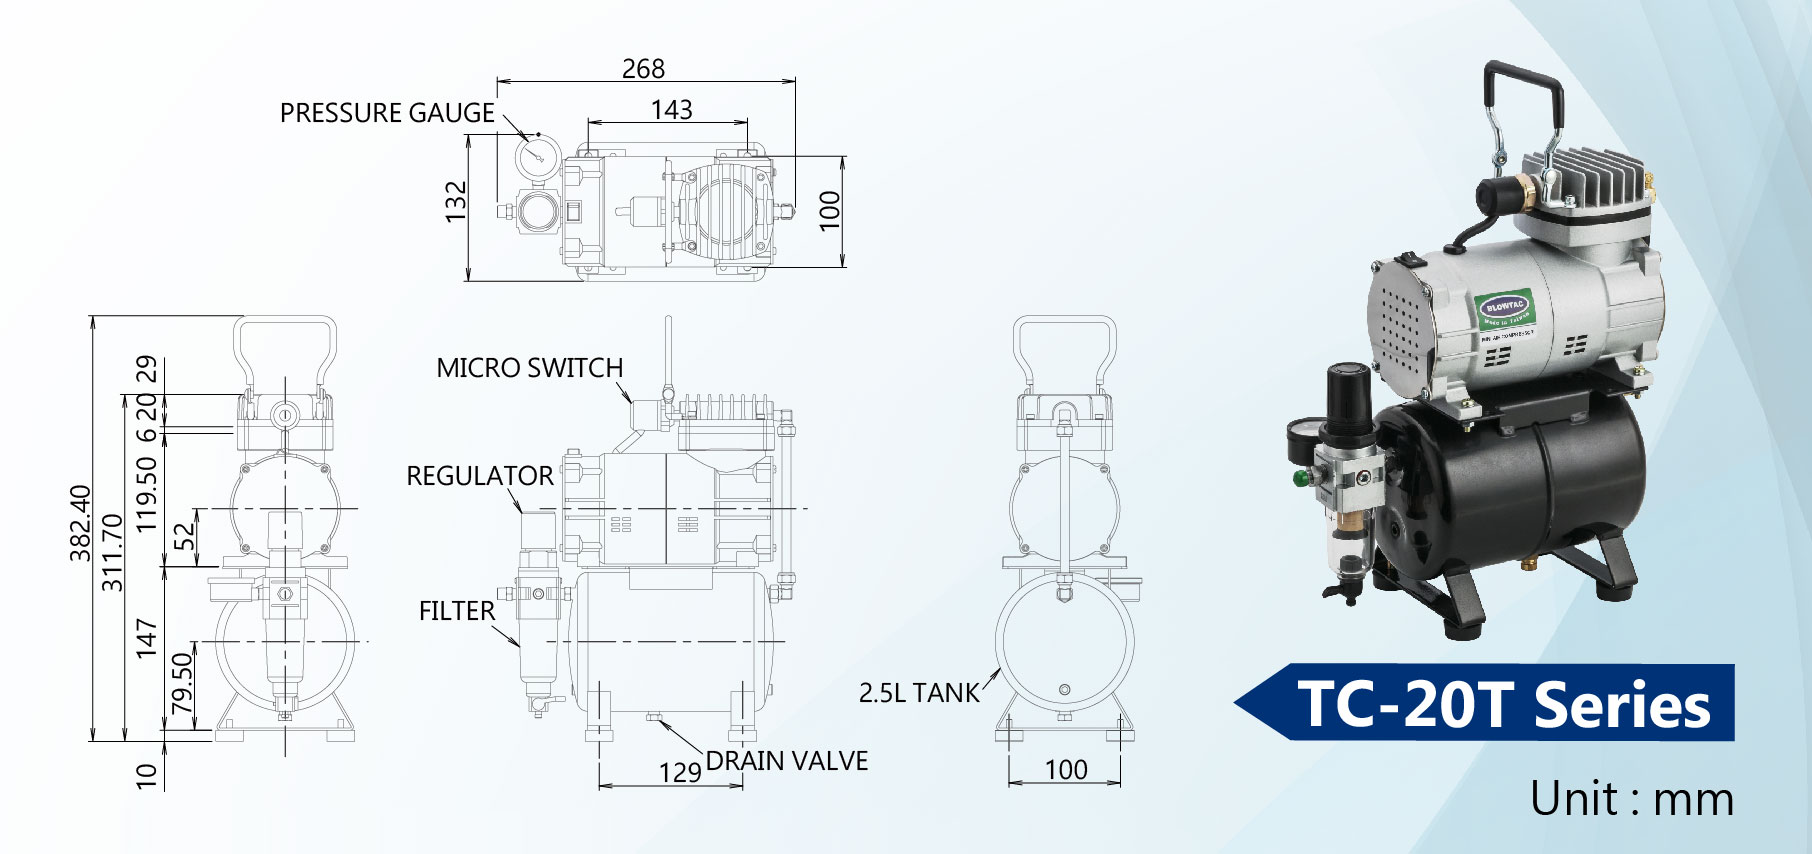 Dimensão dos Mini Compressores de Ar da Série TC-20T